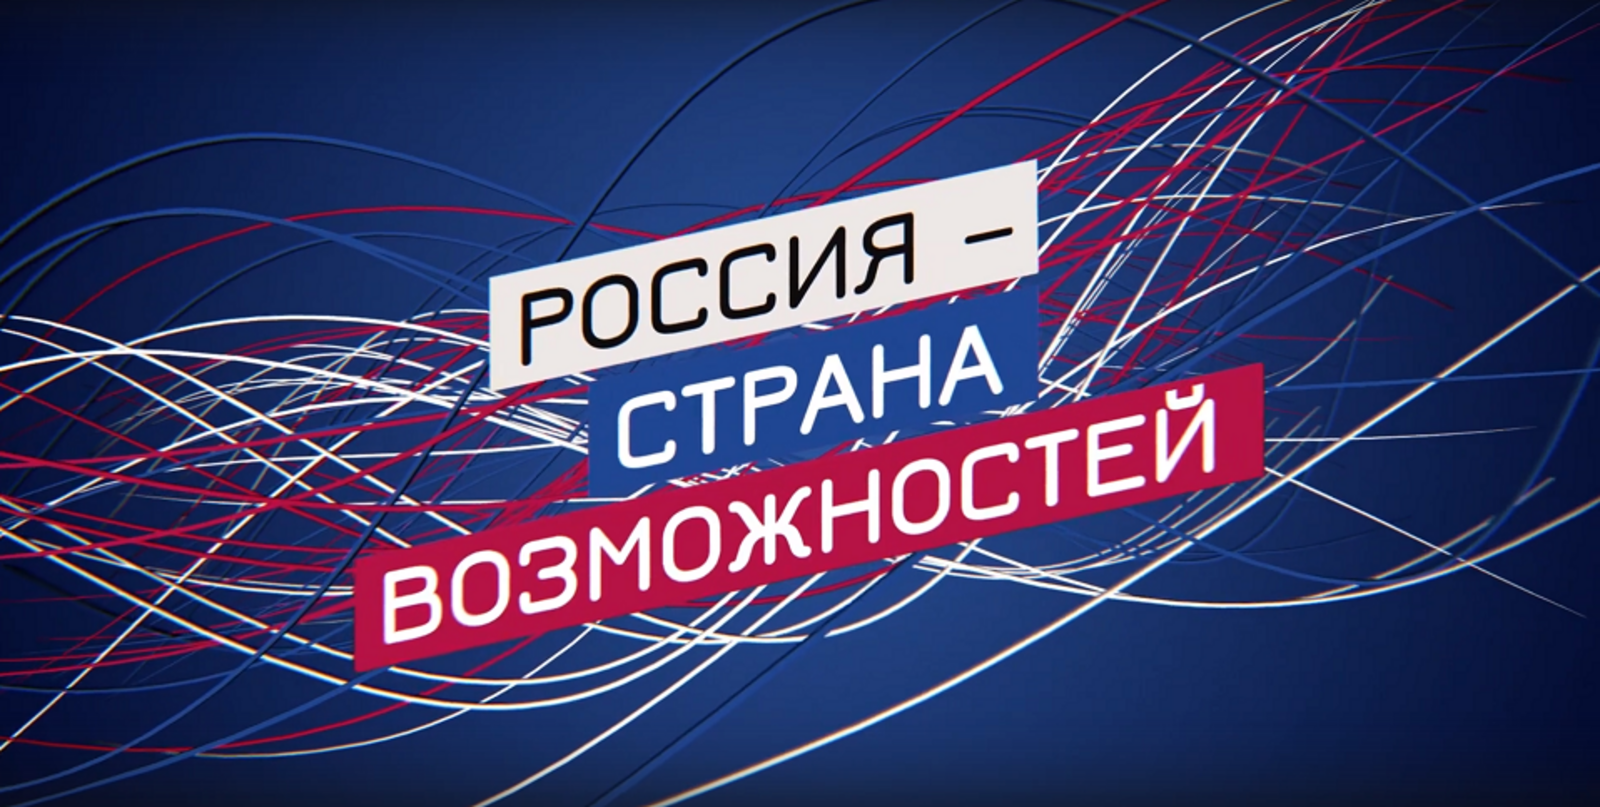 Платформа АНО «Россия — страна возможностей» объединяет 26 конкурсов, проектов и олимпиад